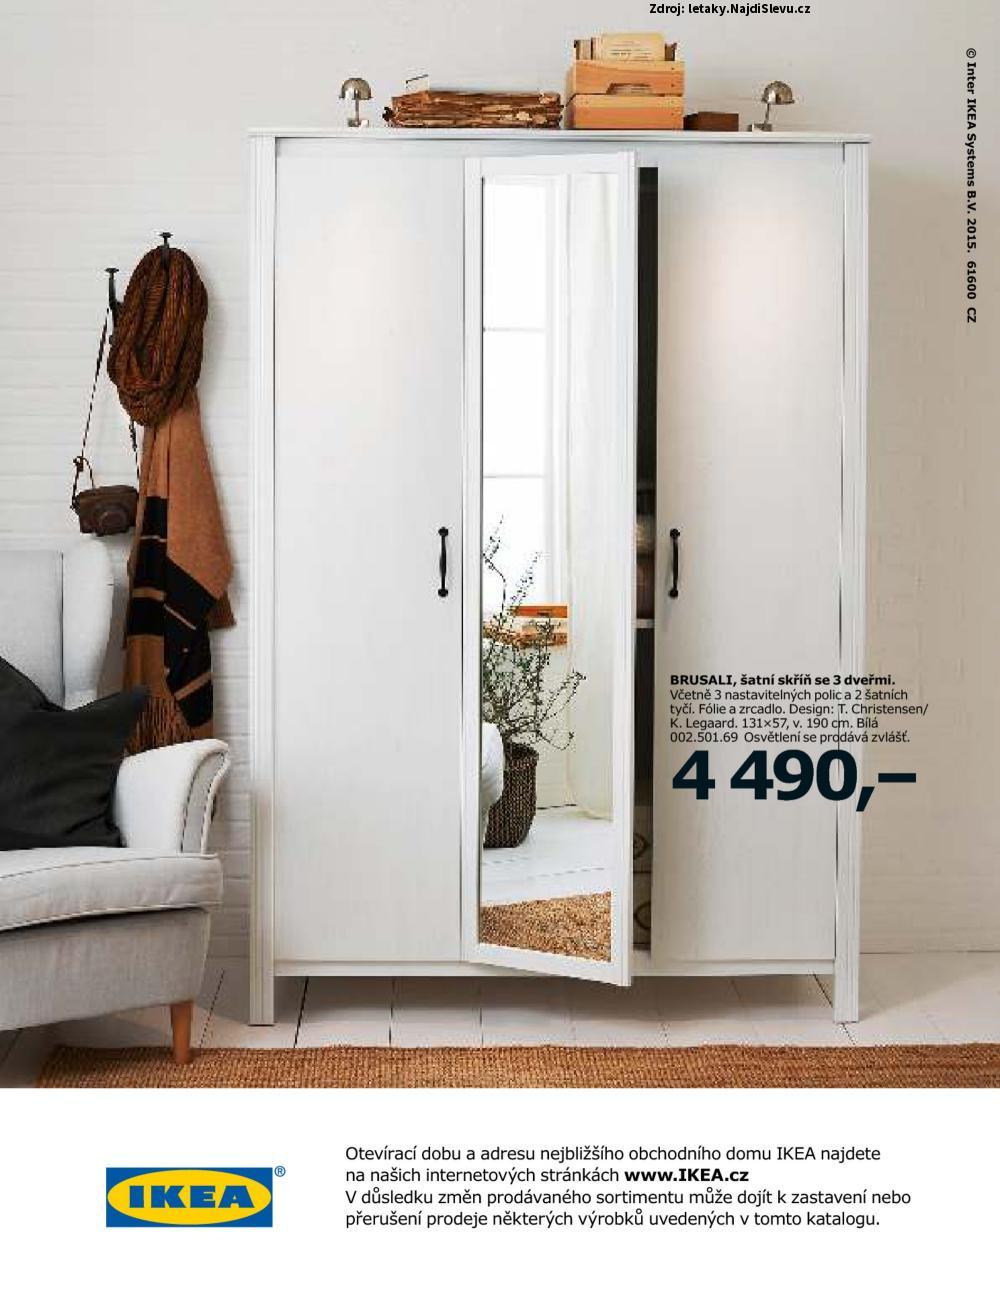 Strana 36 - letk IKEA (do 31. 7. 2016)